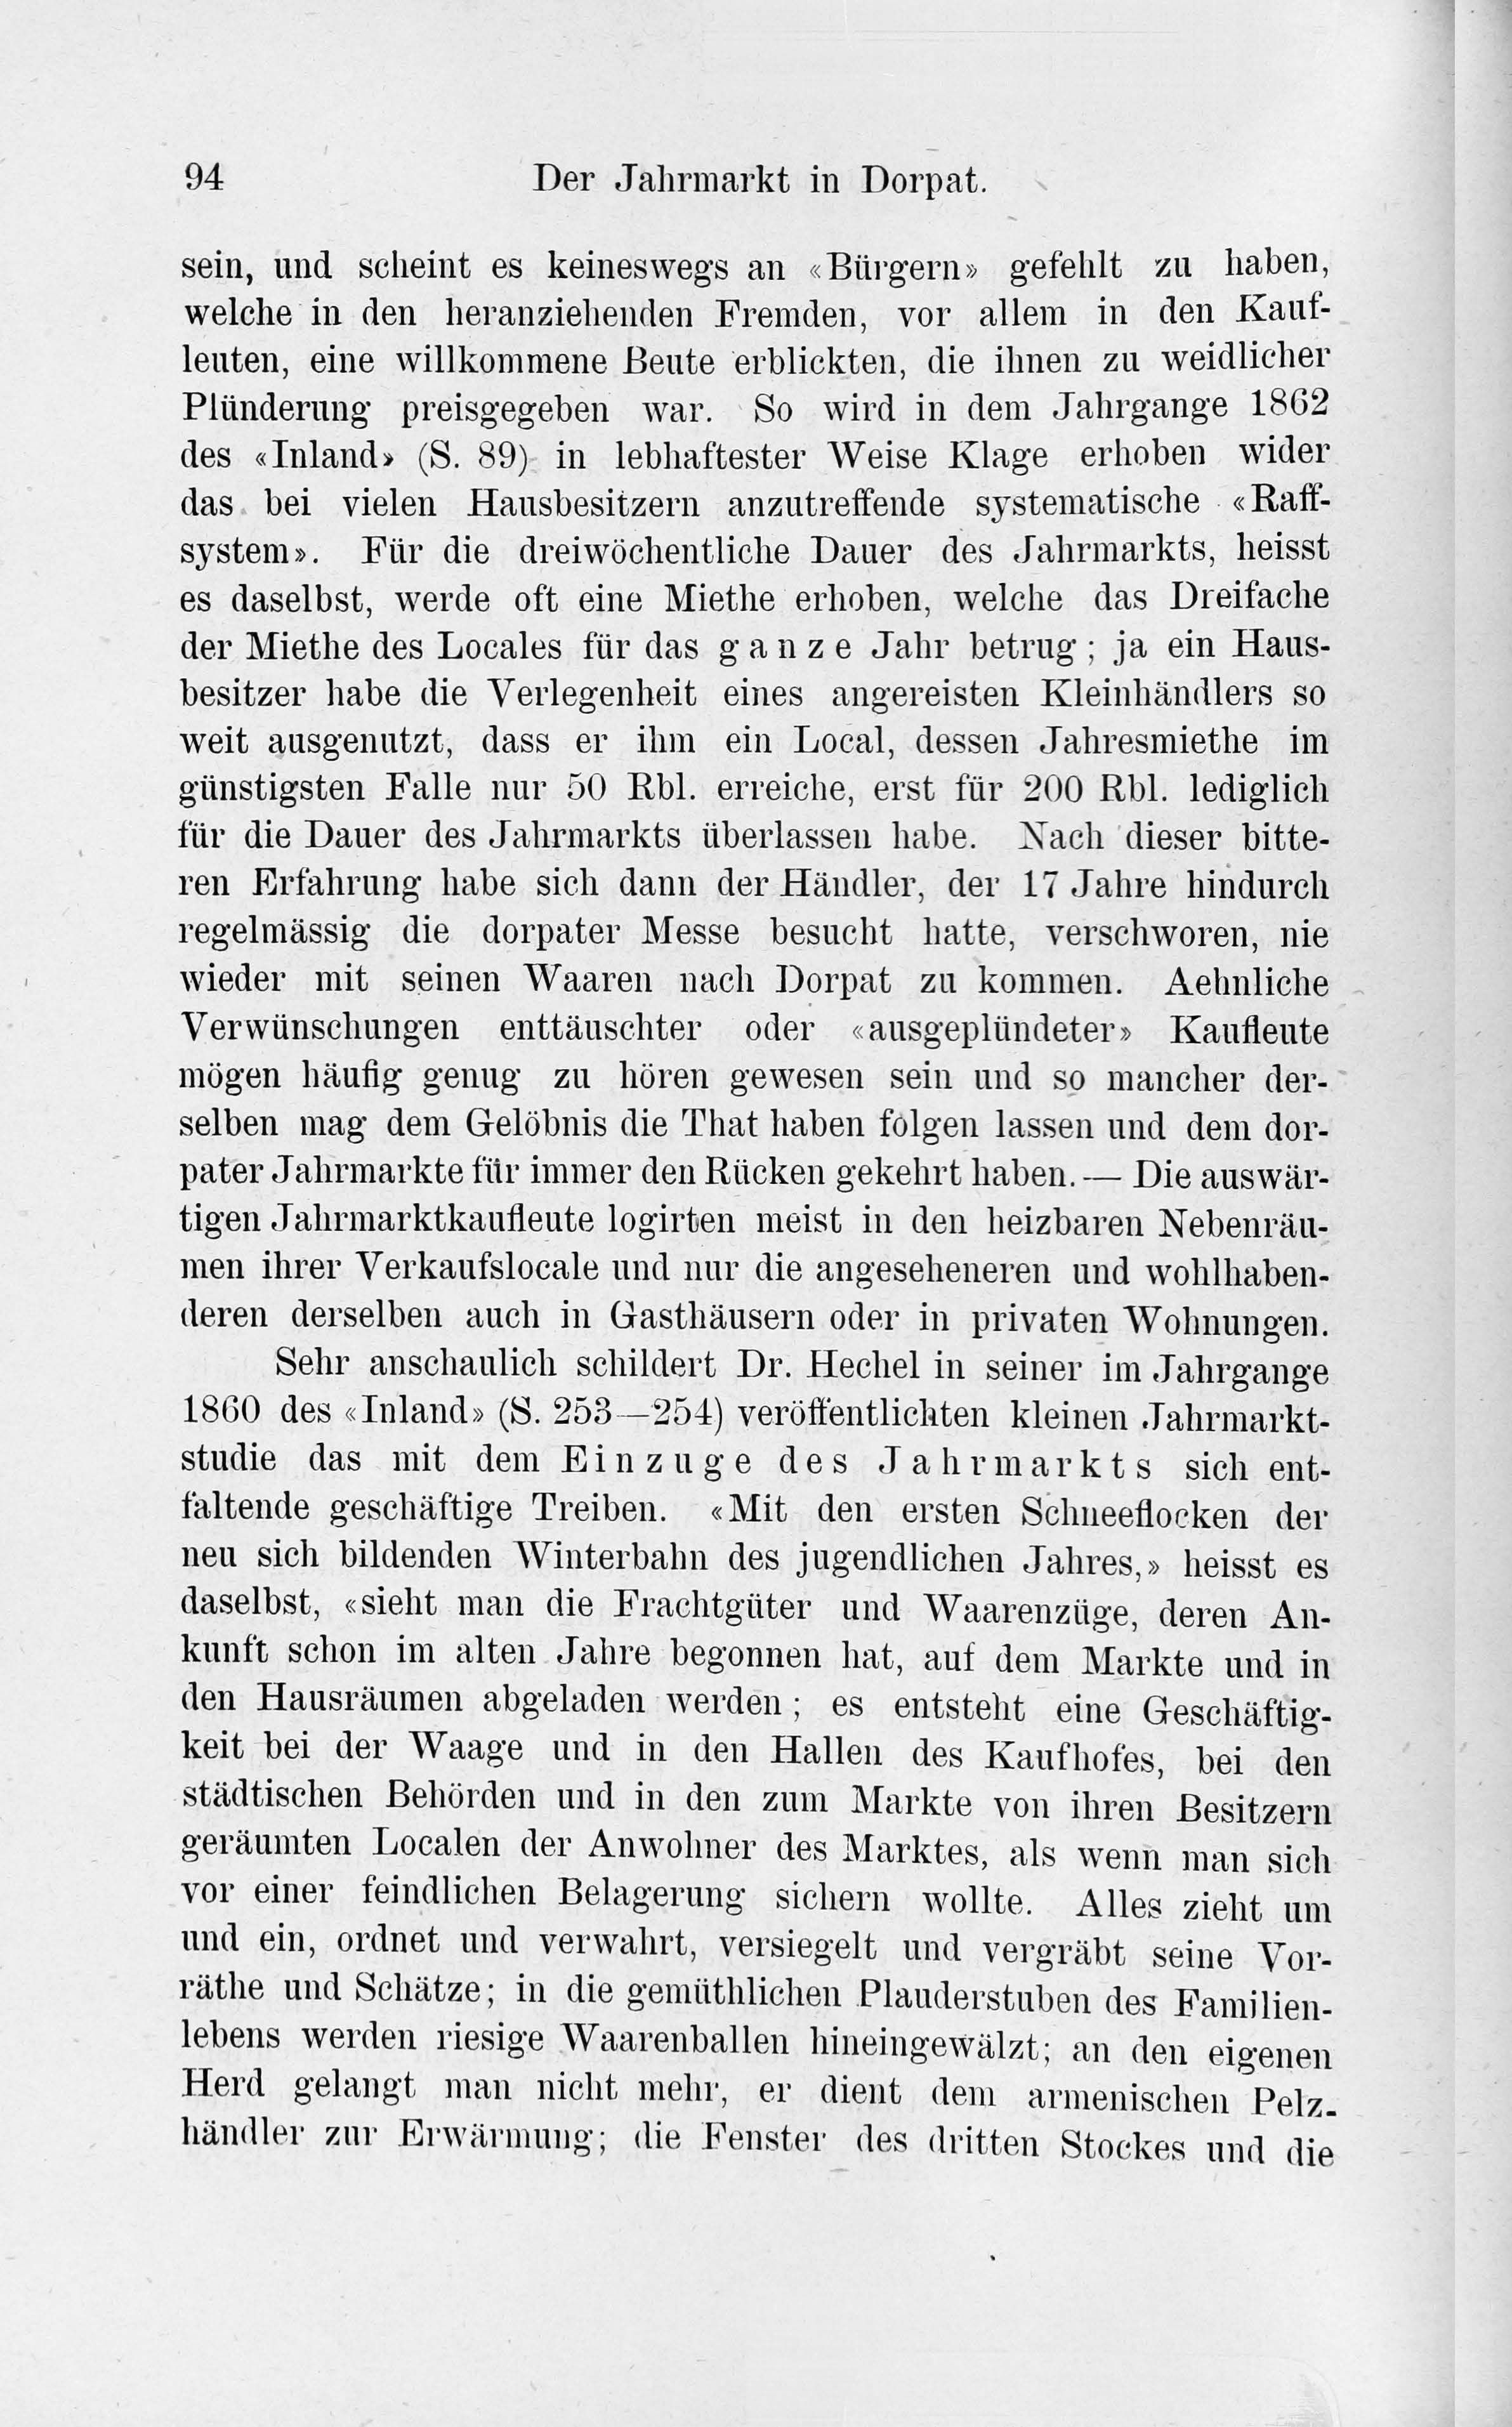 Der Jahrmarkt in Dorpat [2] (1884) | 14. Haupttext